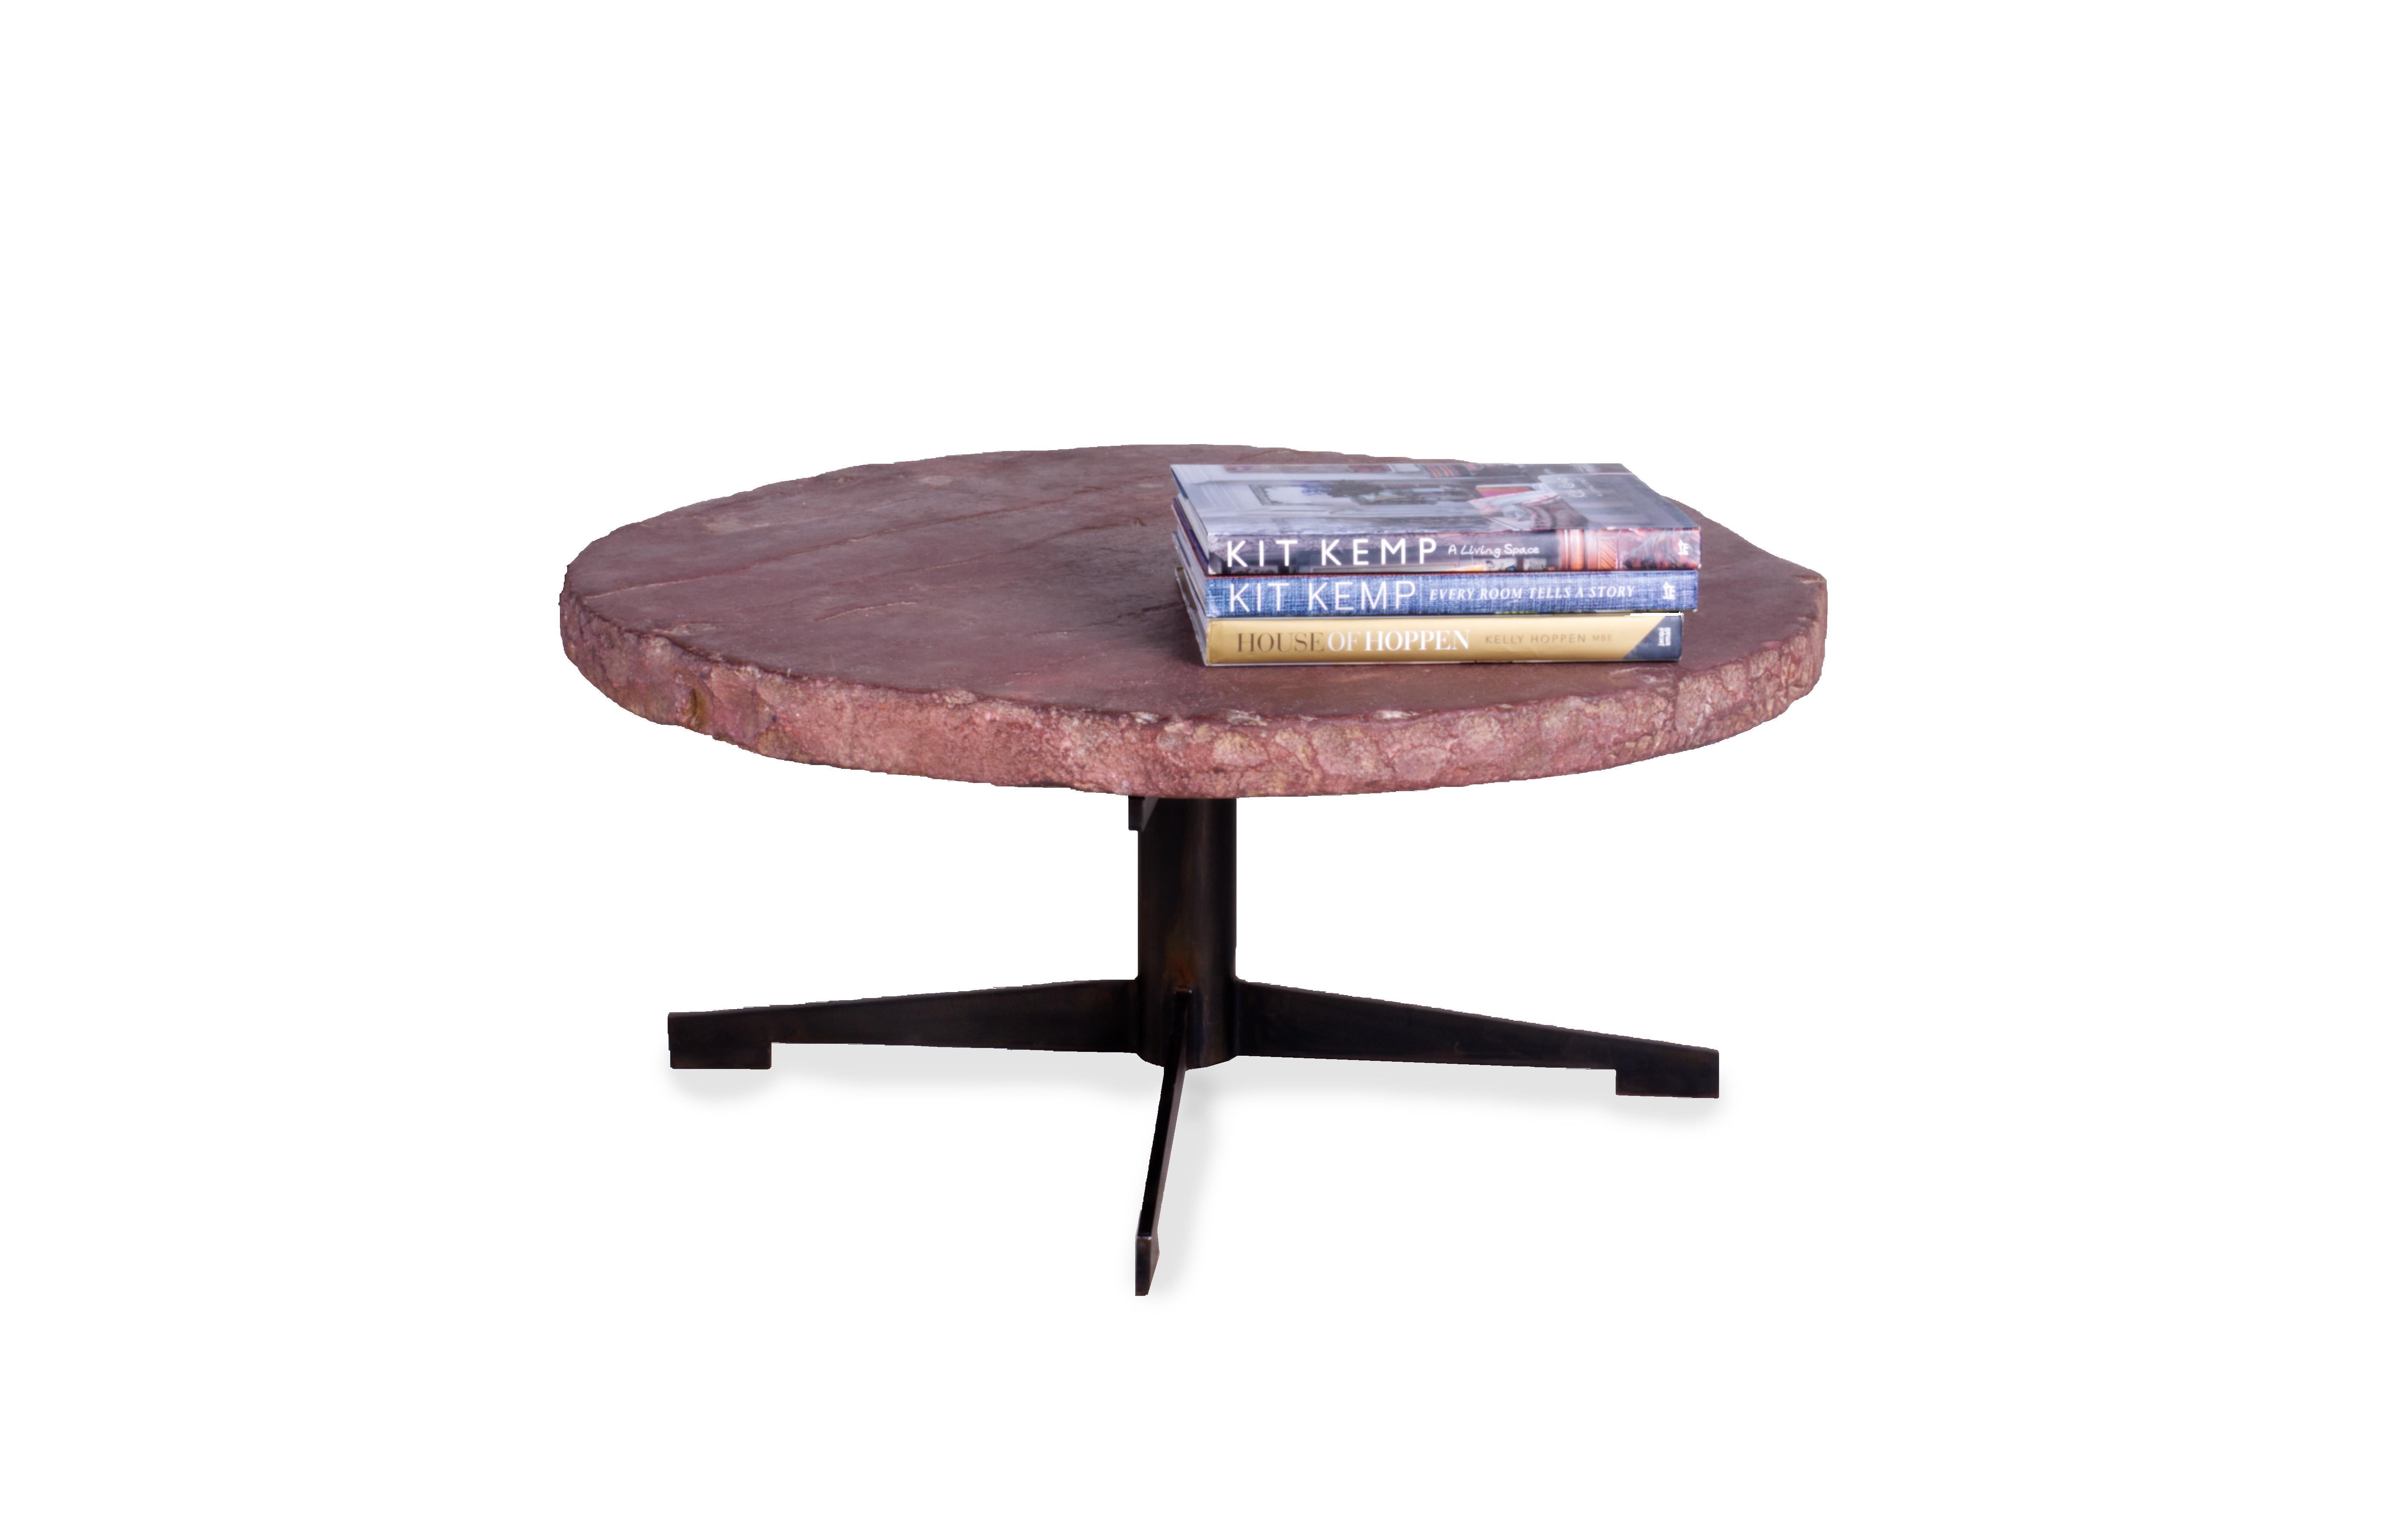 Ein atemberaubendes, modernes und kreatives Möbelstück: Diese runde Tischplatte ist aus Kalkstein gefertigt, einem natürlichen Material mit einzigartigen und organischen Details. Der Tisch steht auf einem Sockel aus ebonisiertem Stahl und ist